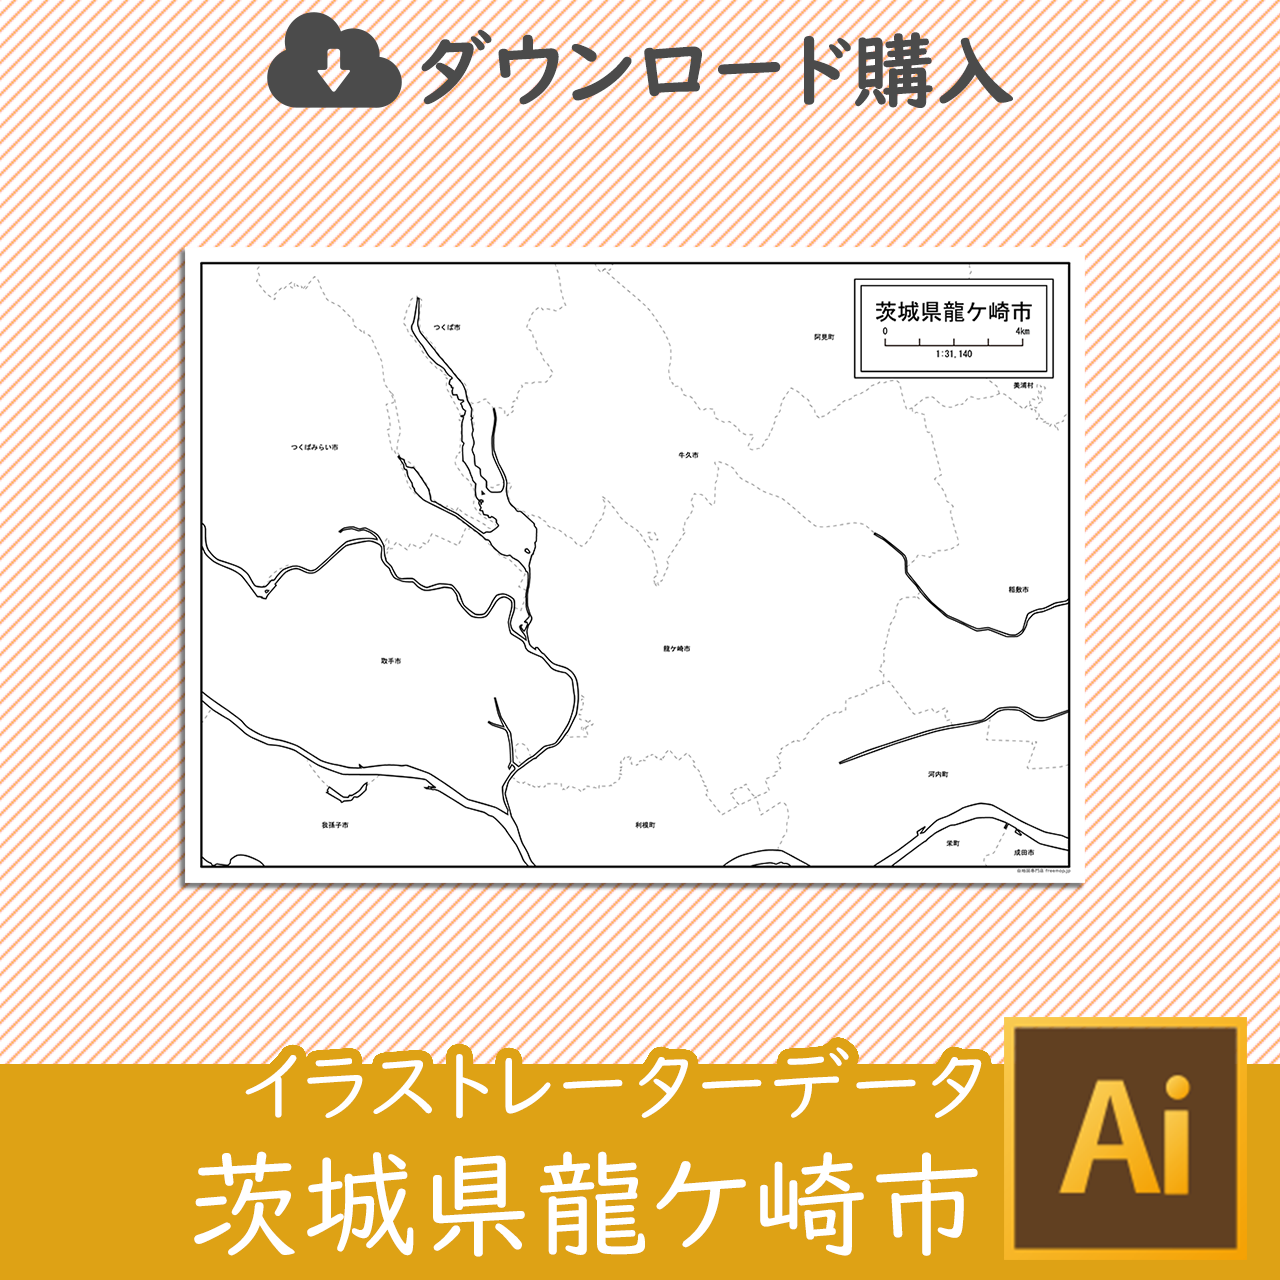 龍ケ崎市のaiデータのサムネイル画像